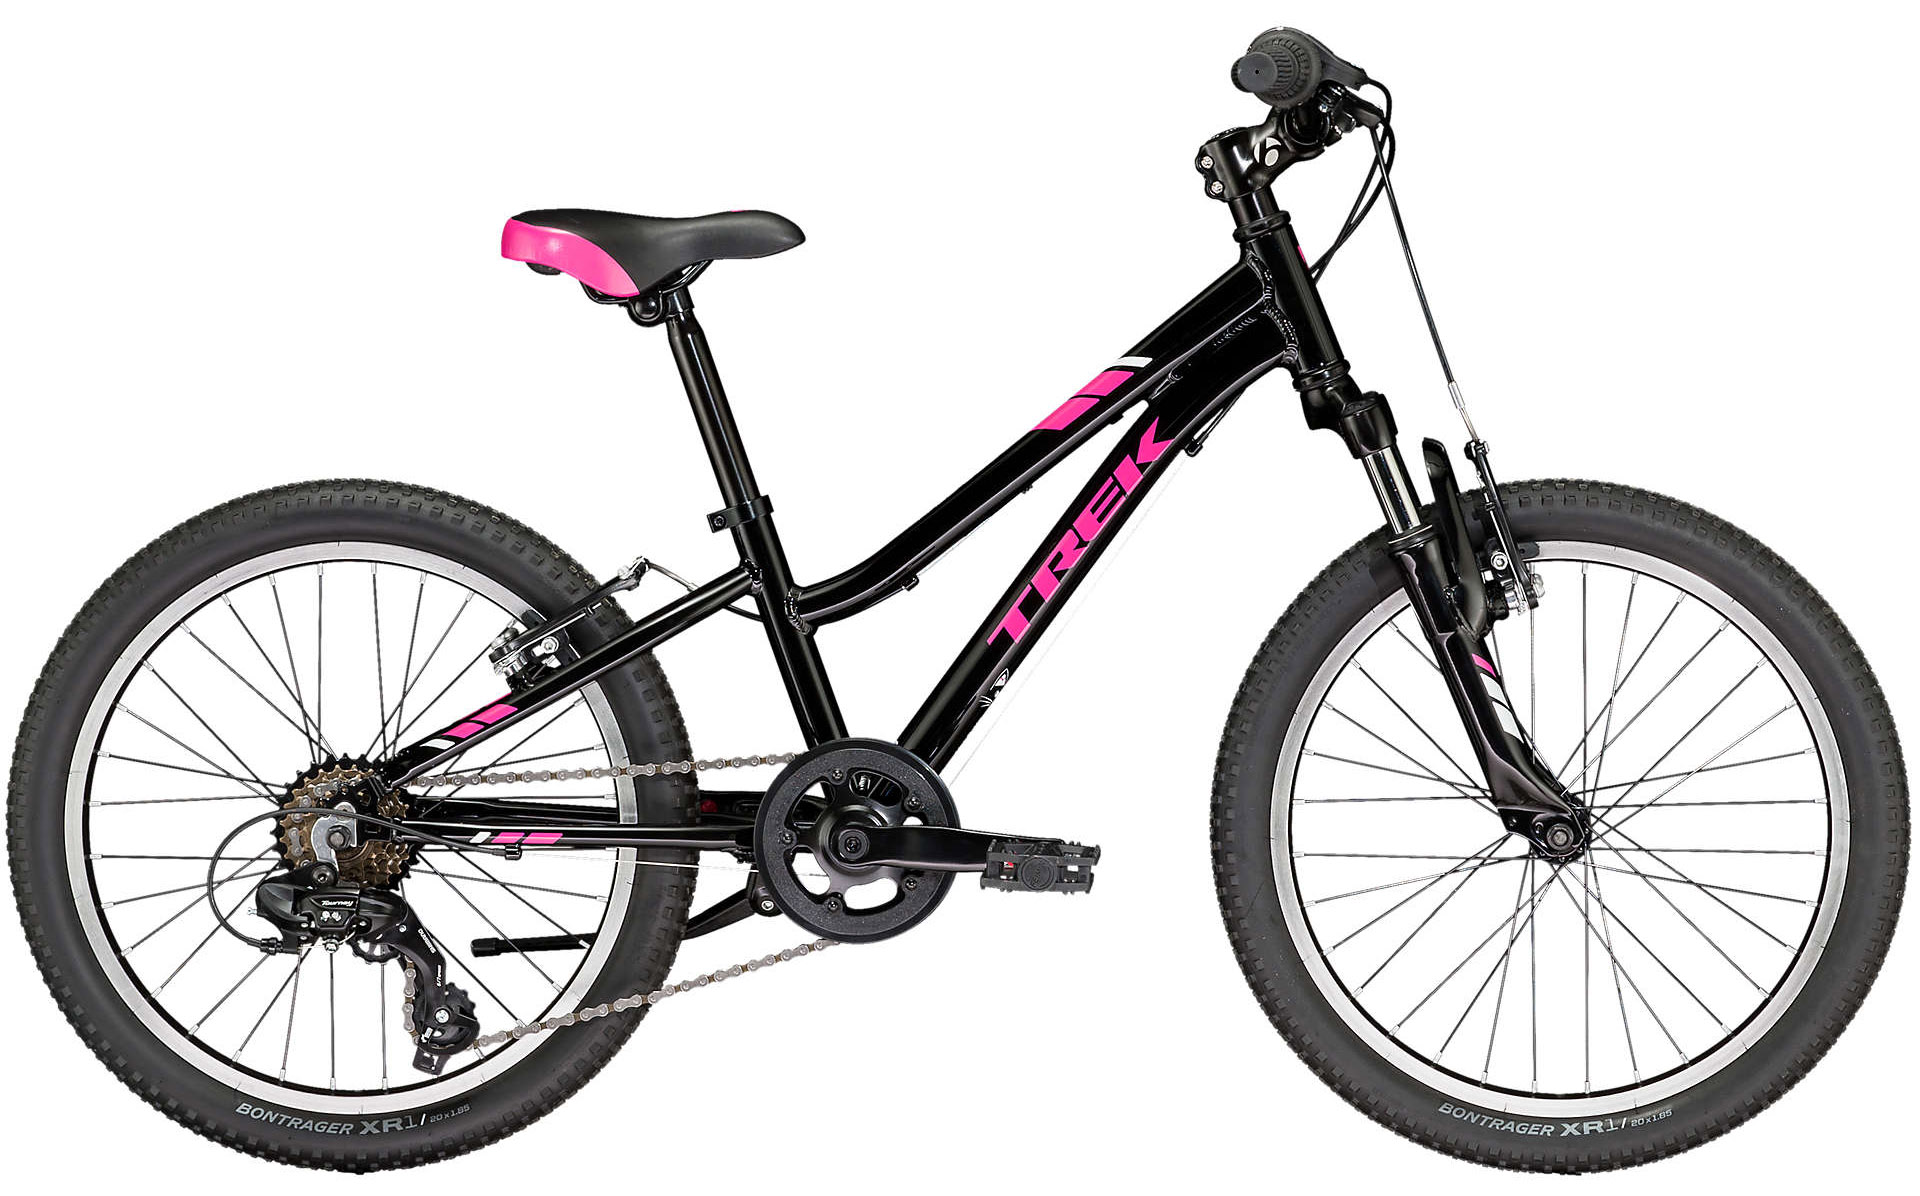  Отзывы о Детском велосипеде Trek Precaliber 20 6-speed Girls 2019